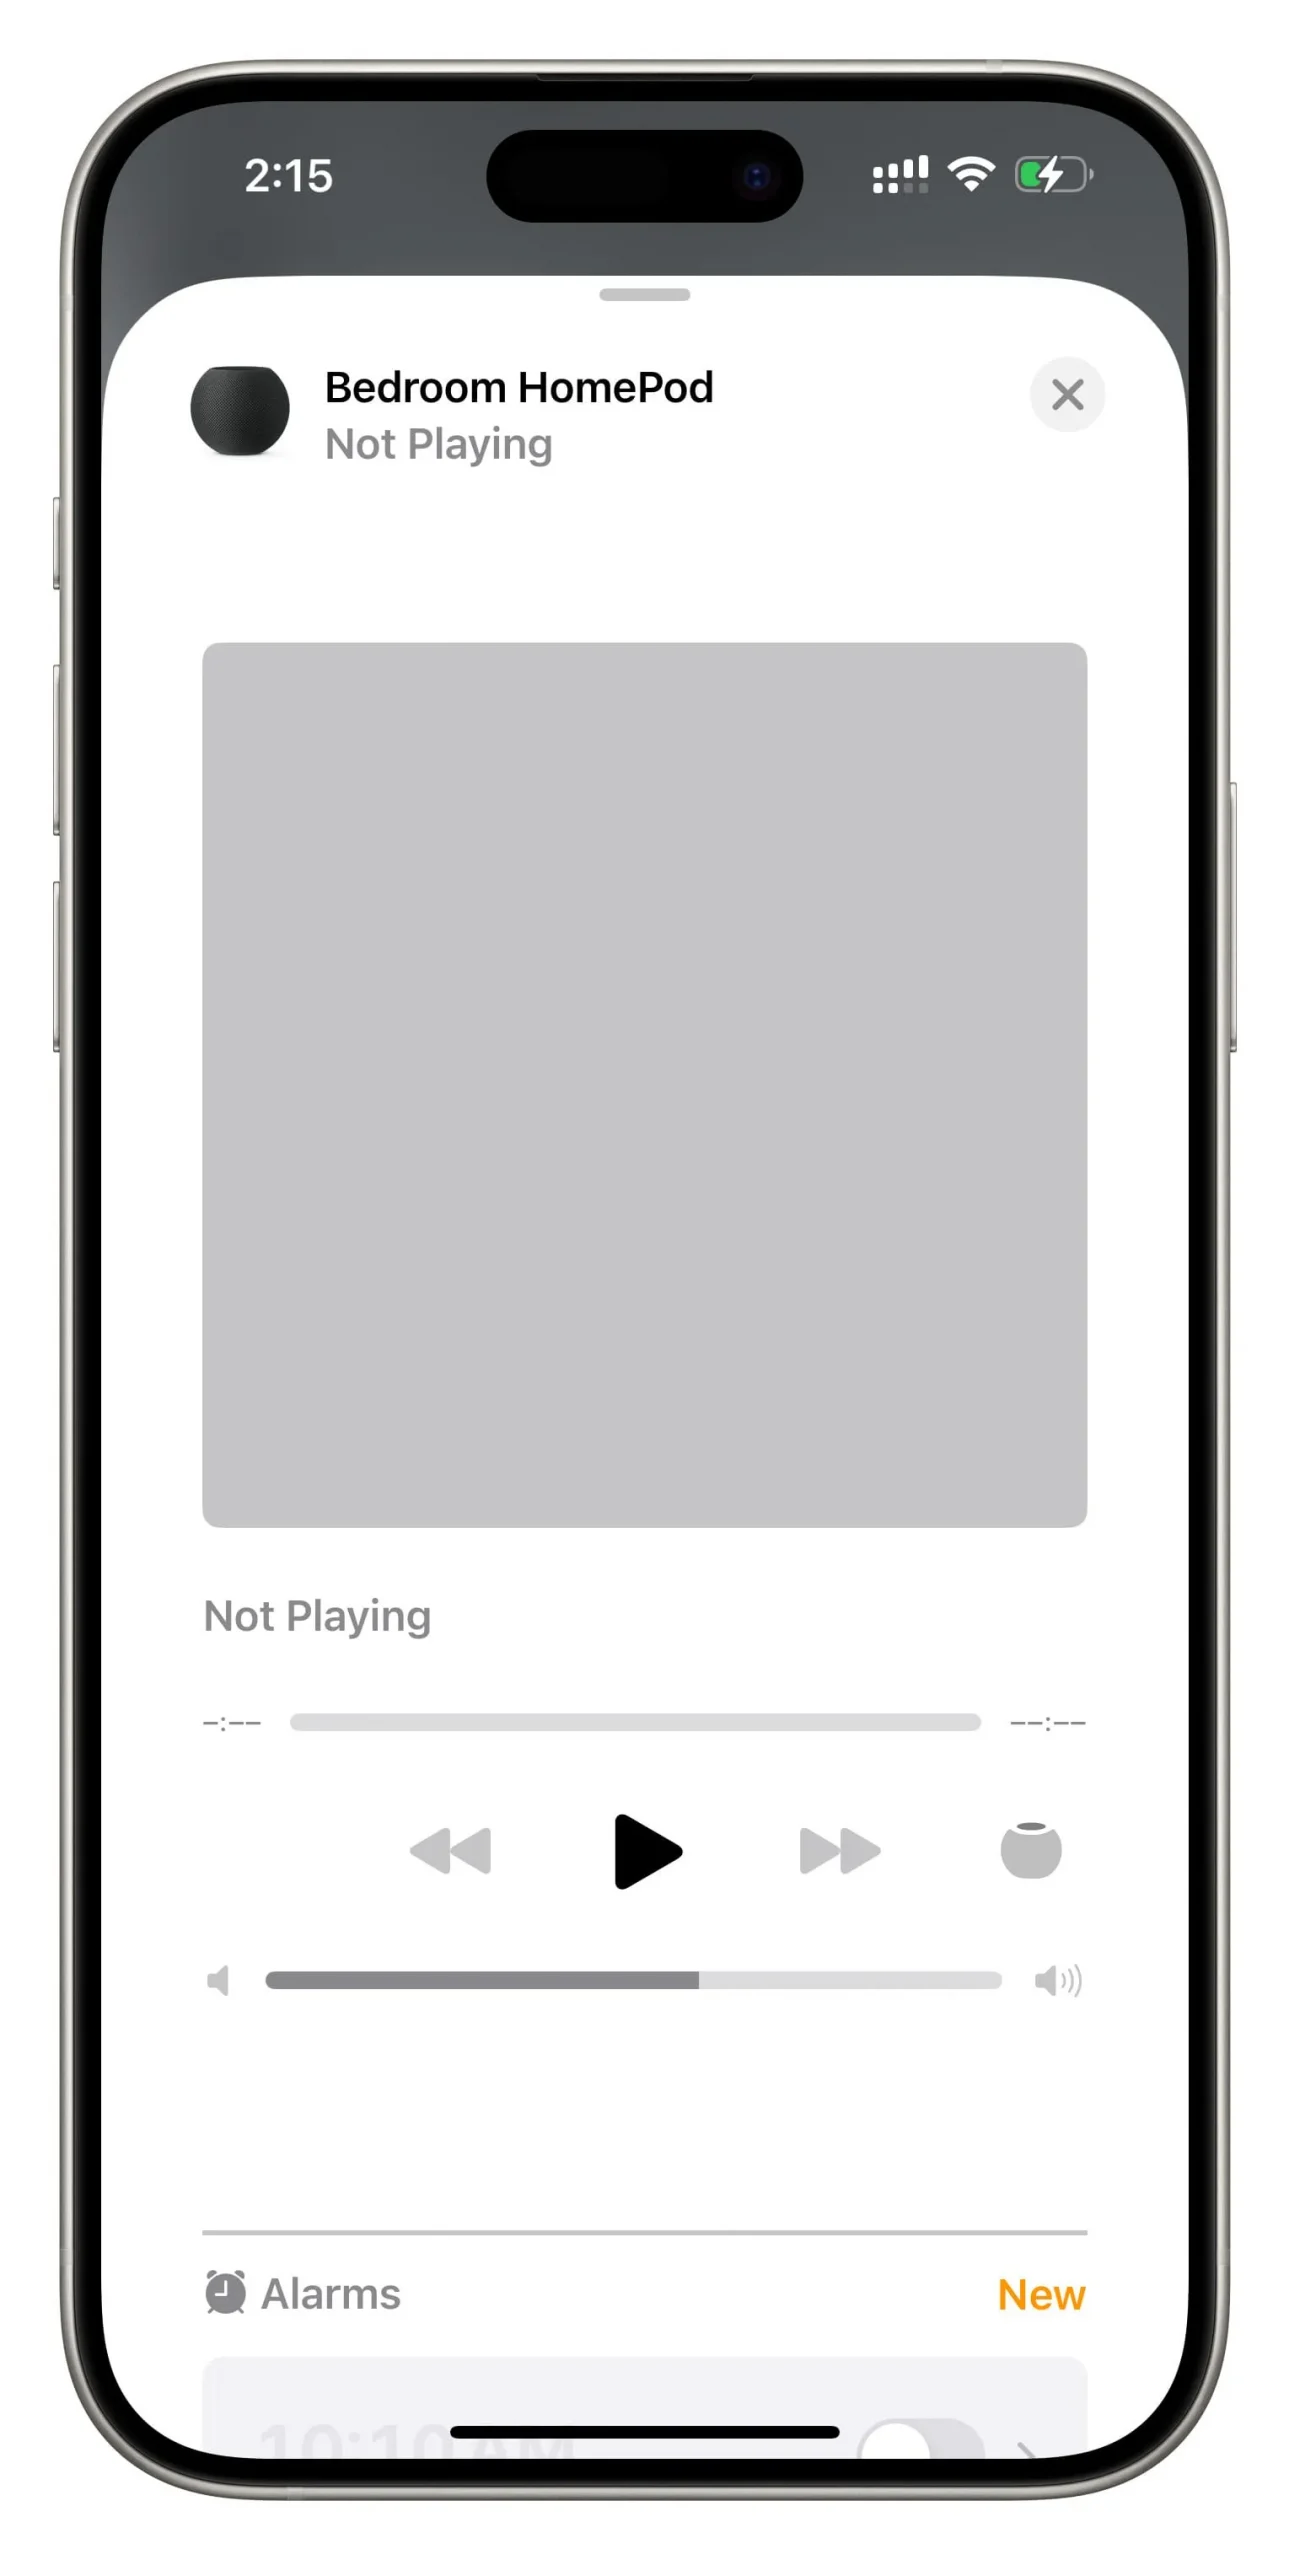 Nenhuma reprodução de mídia no iPhone, mas a tela do HomePod AirPlay aparece